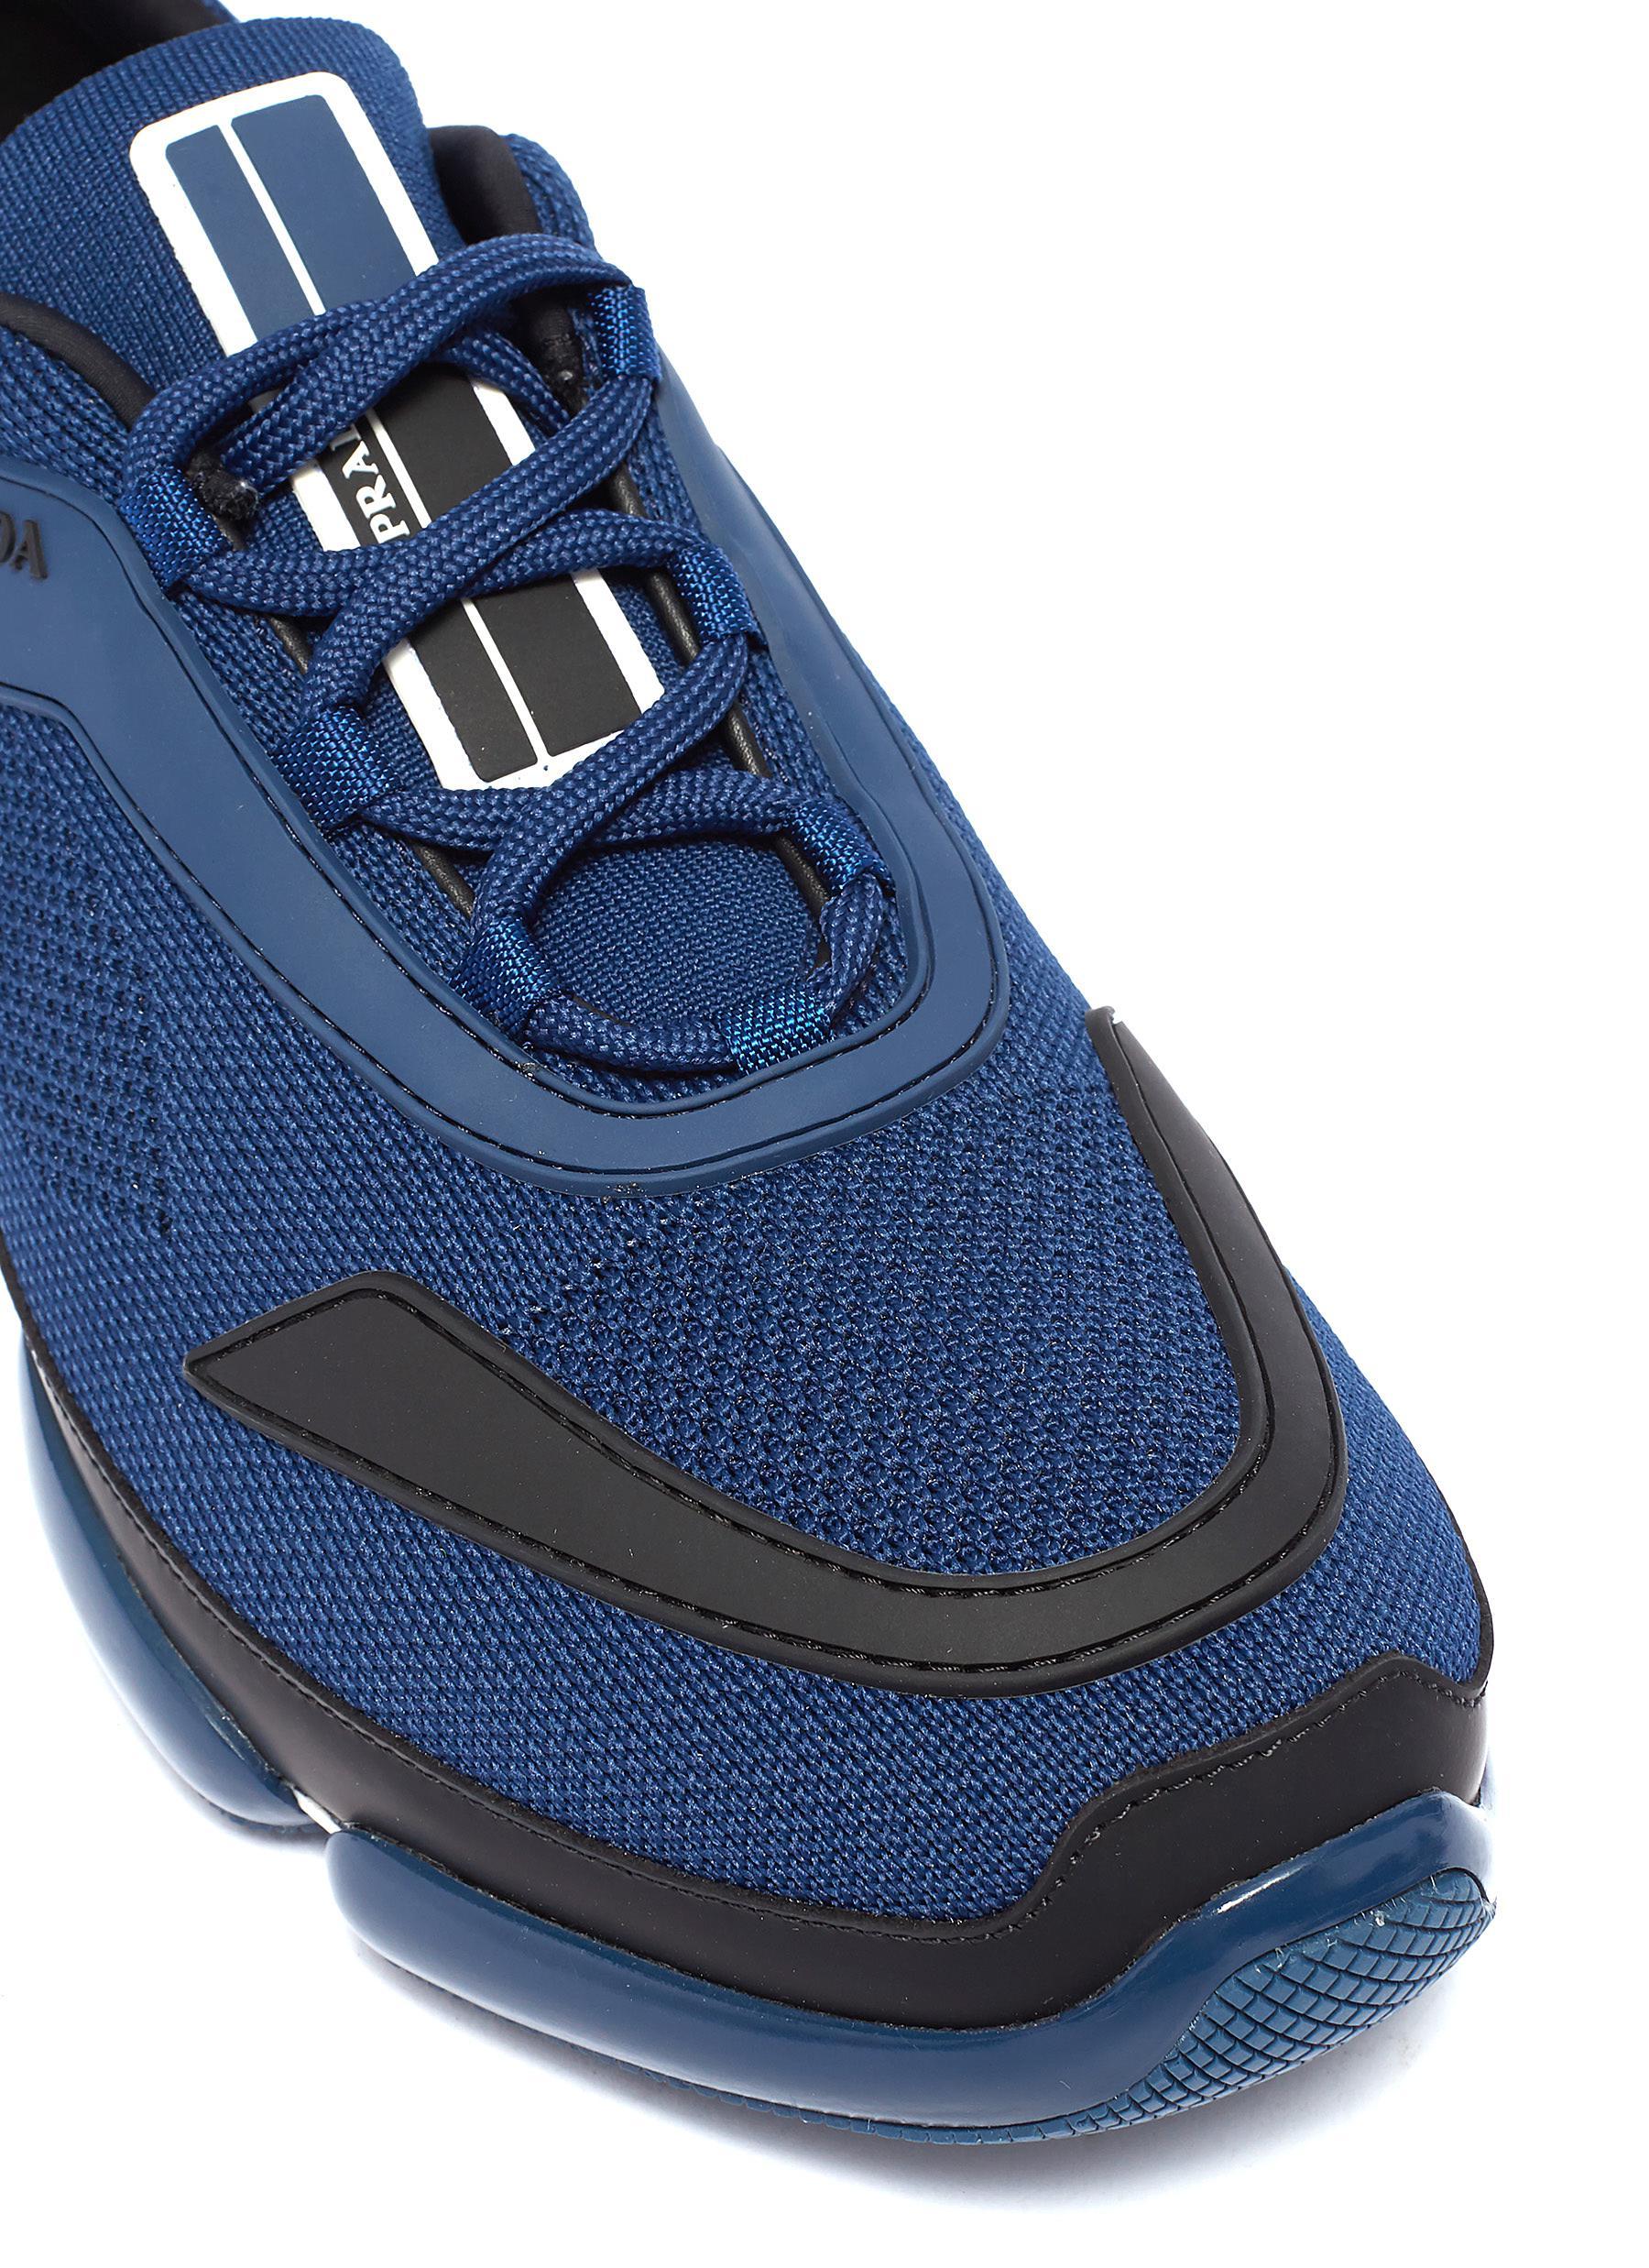 Prada Rubber Cloudbust Knit Sneakers in Blue for Men - Lyst